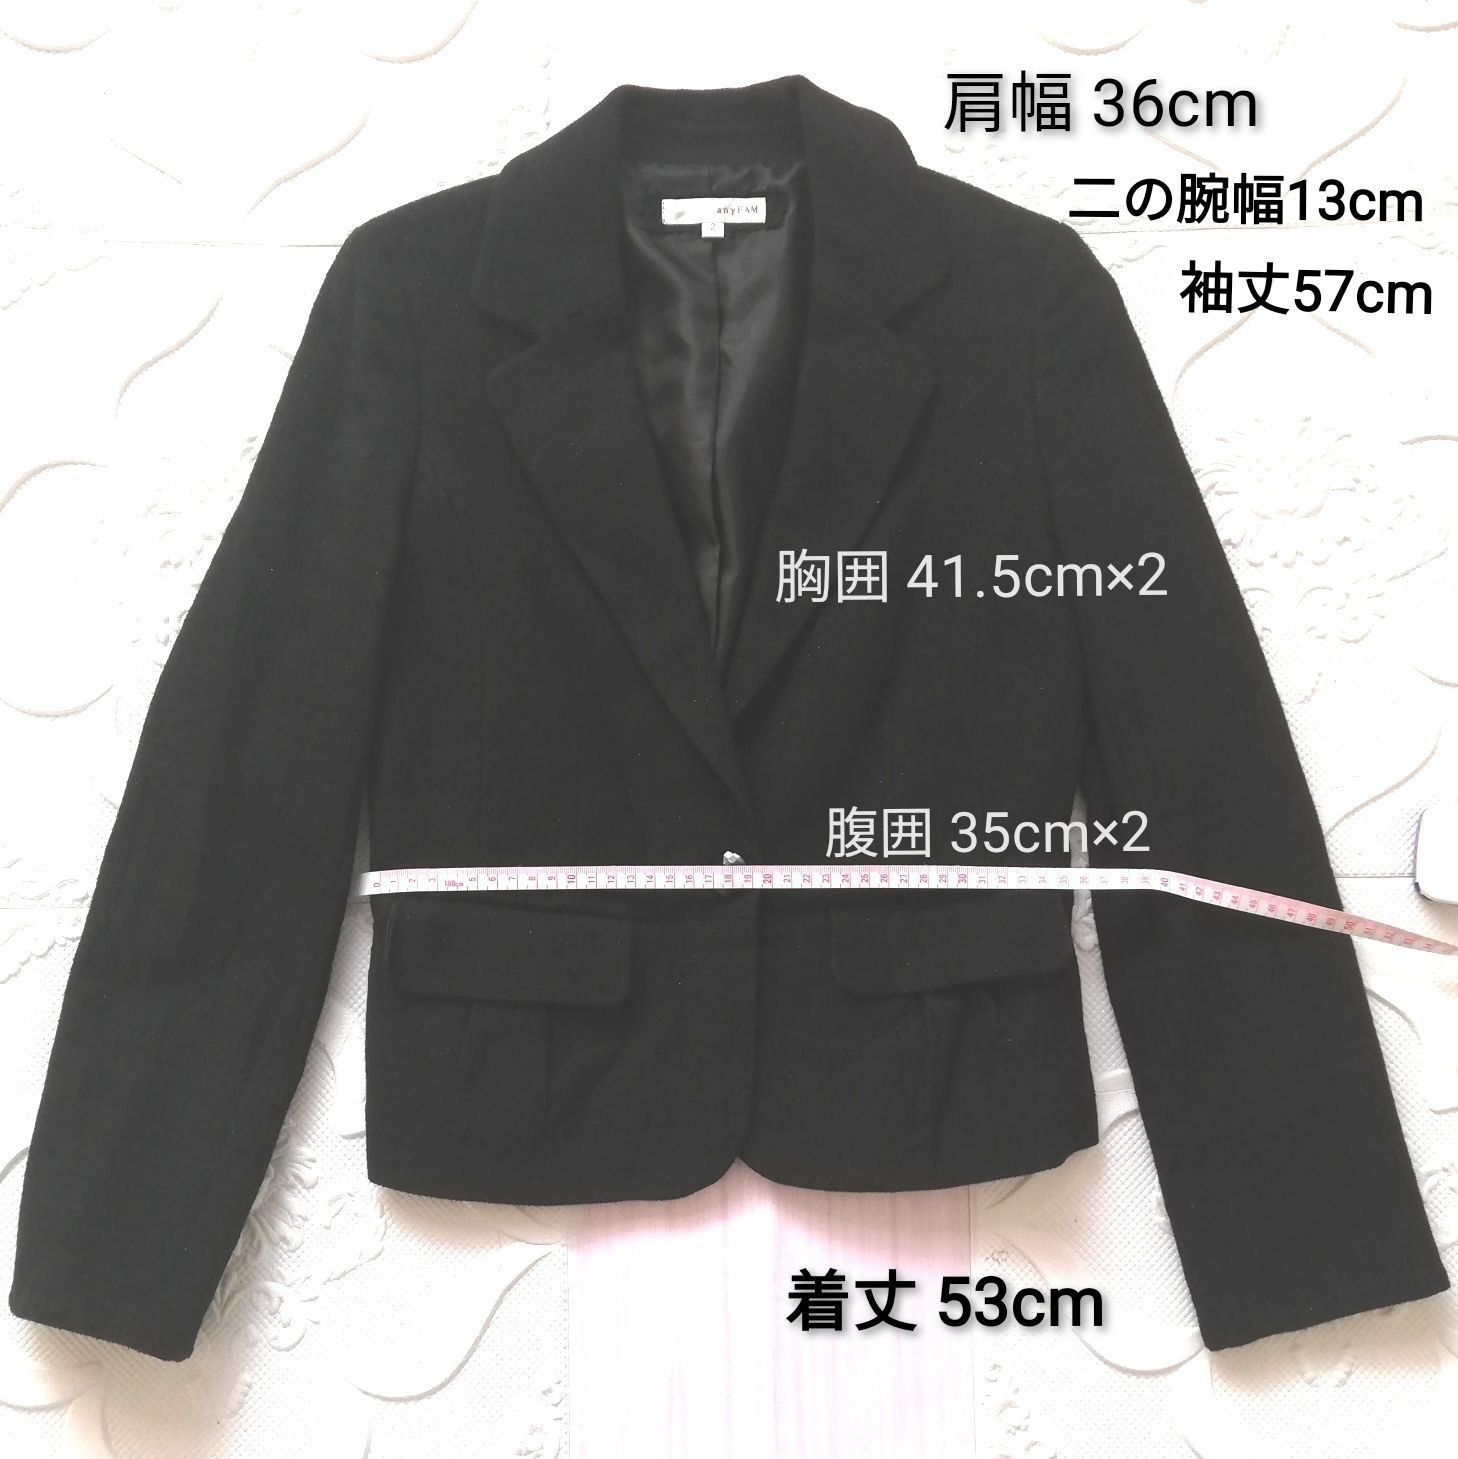 ✨特別セール✨☆超美品☆オンワード樫山 黒テーラードジャケット